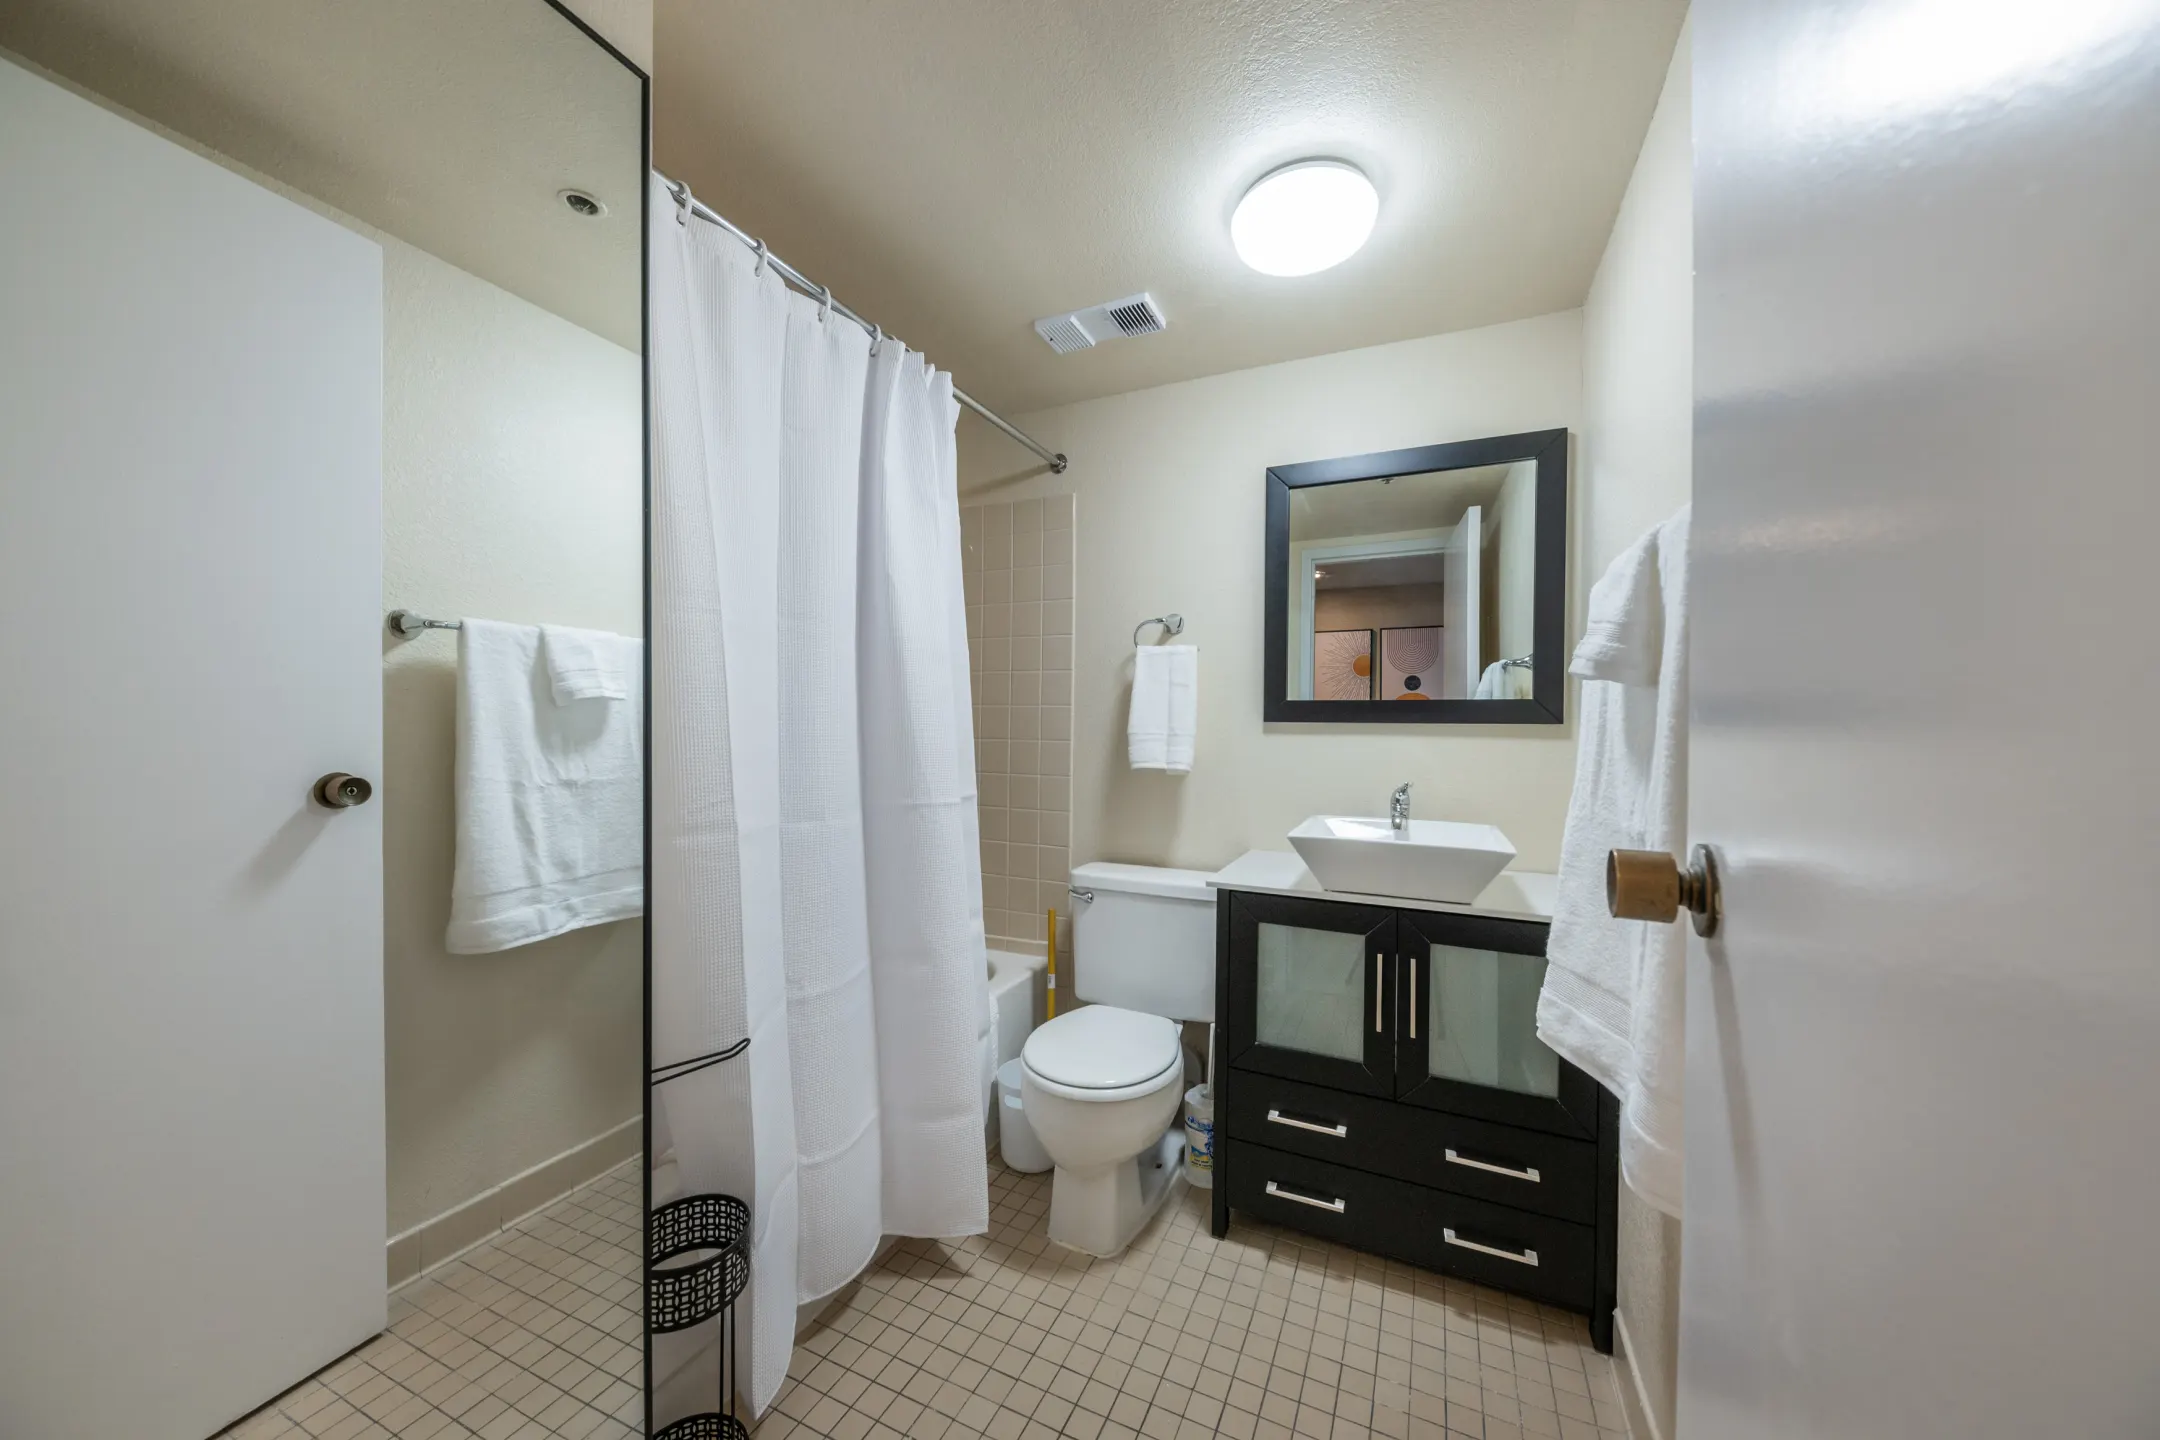 Bathroom - Reno Regency - Reno, NV